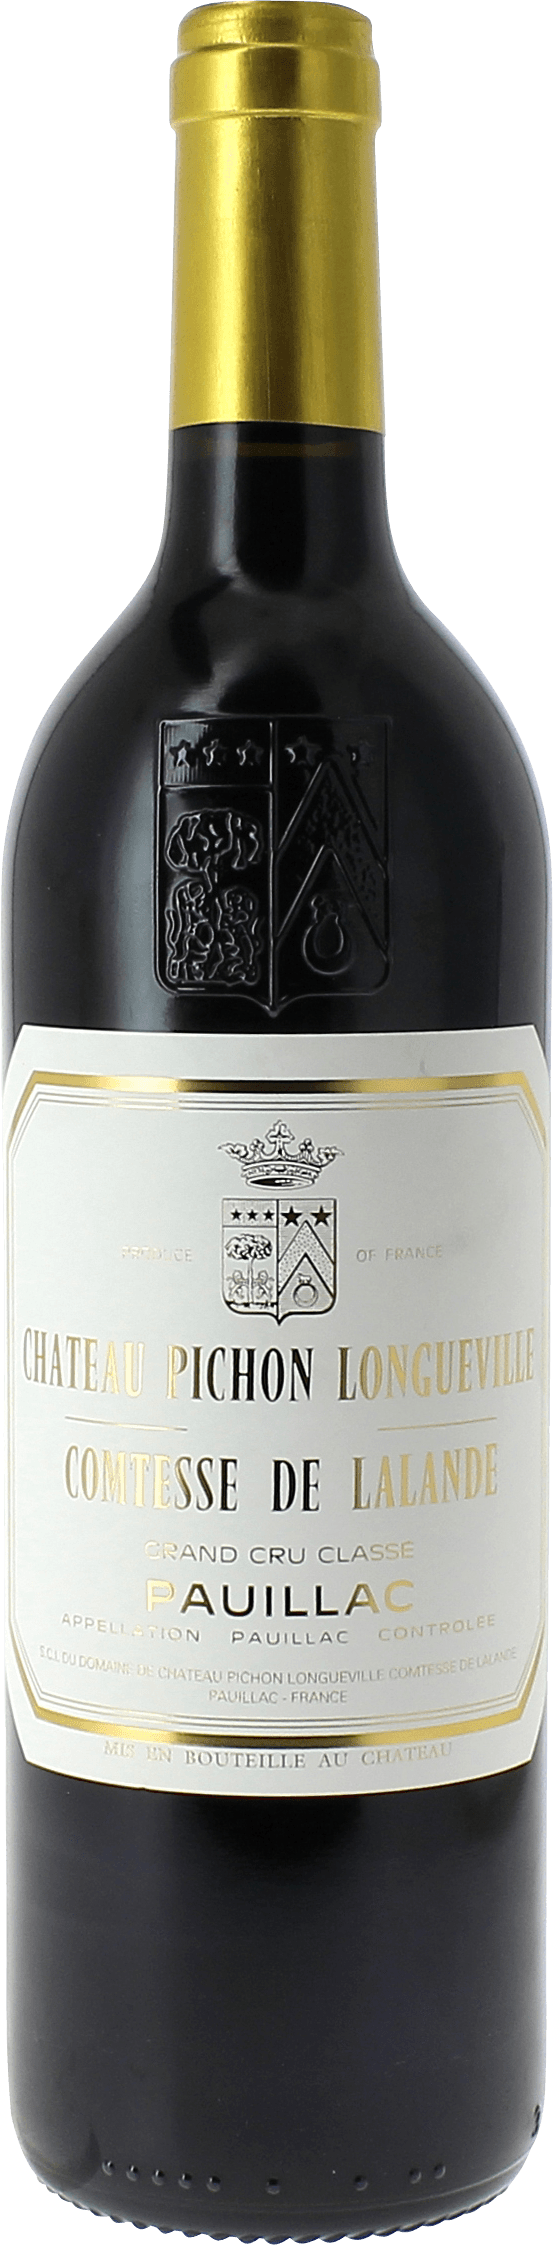 Pichon comtesse de lalande 2017 2me Grand cru class Pauillac, Bordeaux rouge